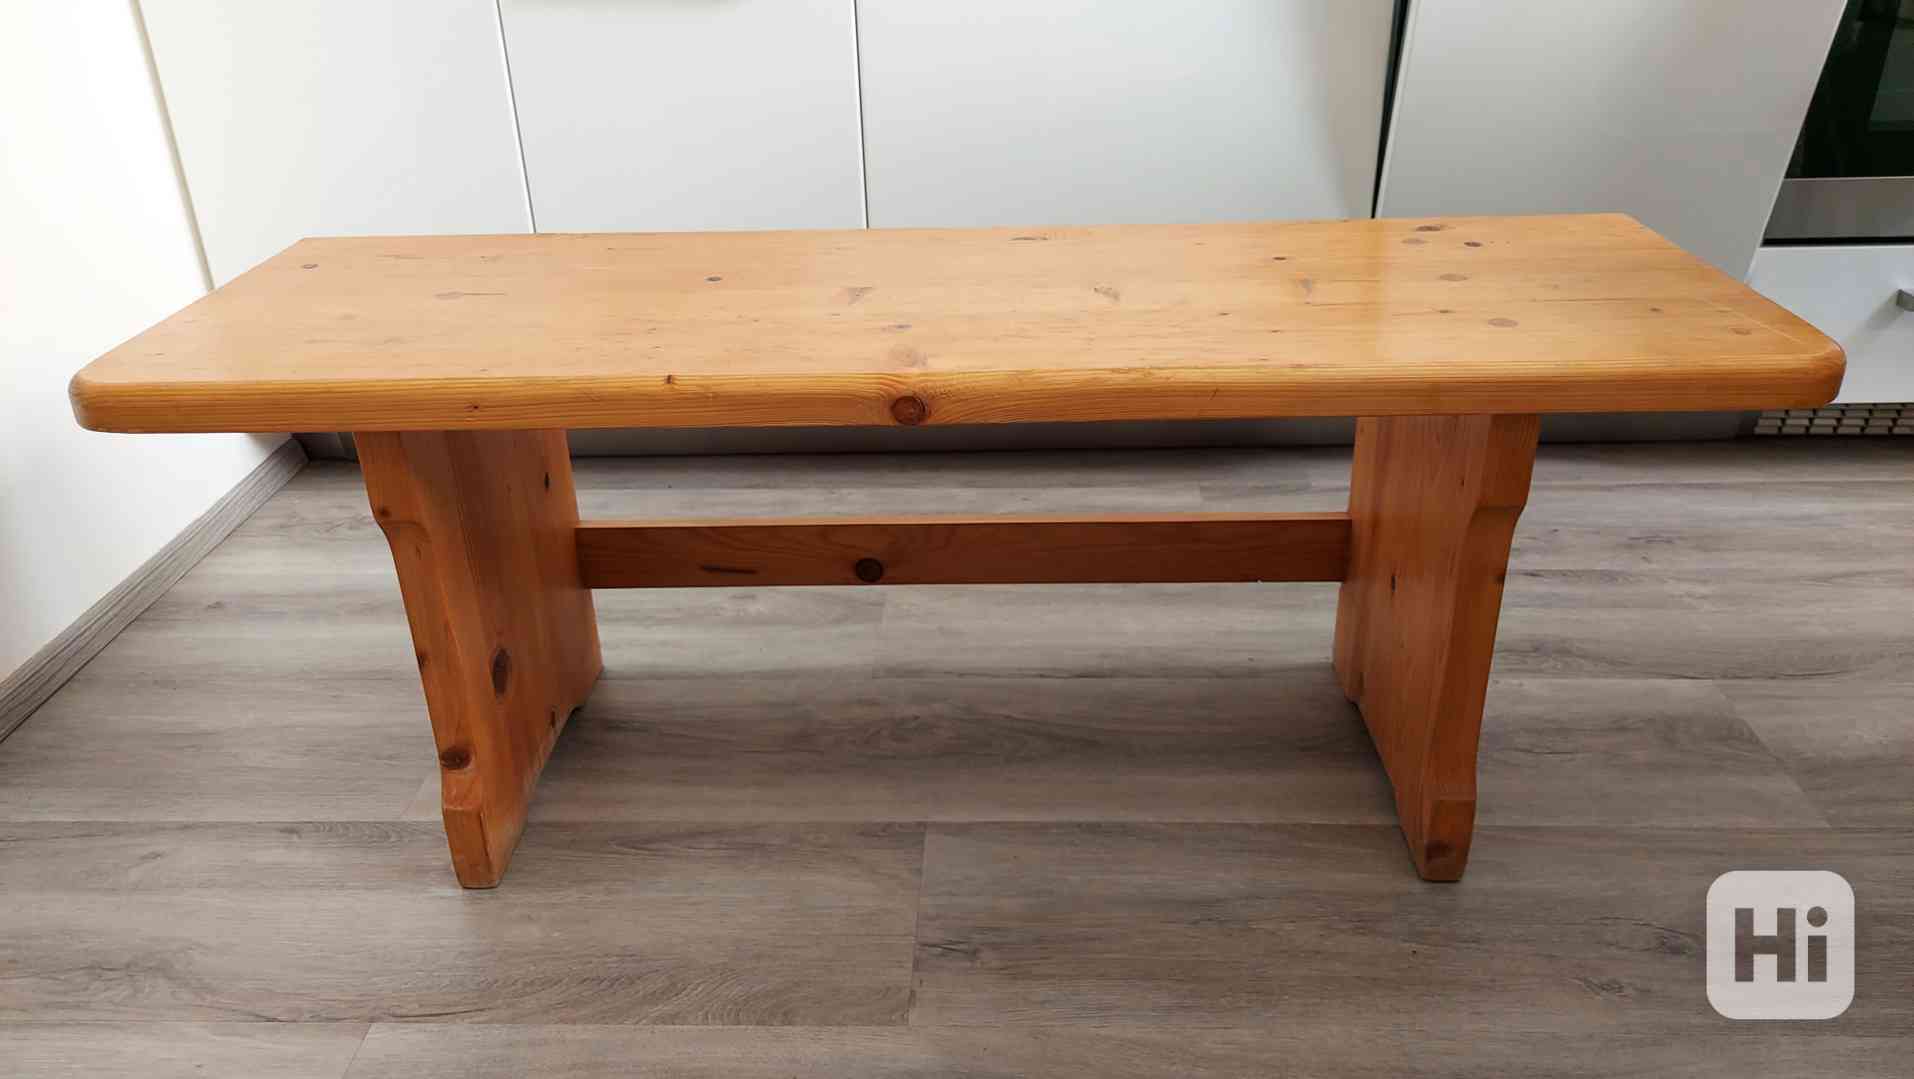 Dřevěná lavice - foto 1